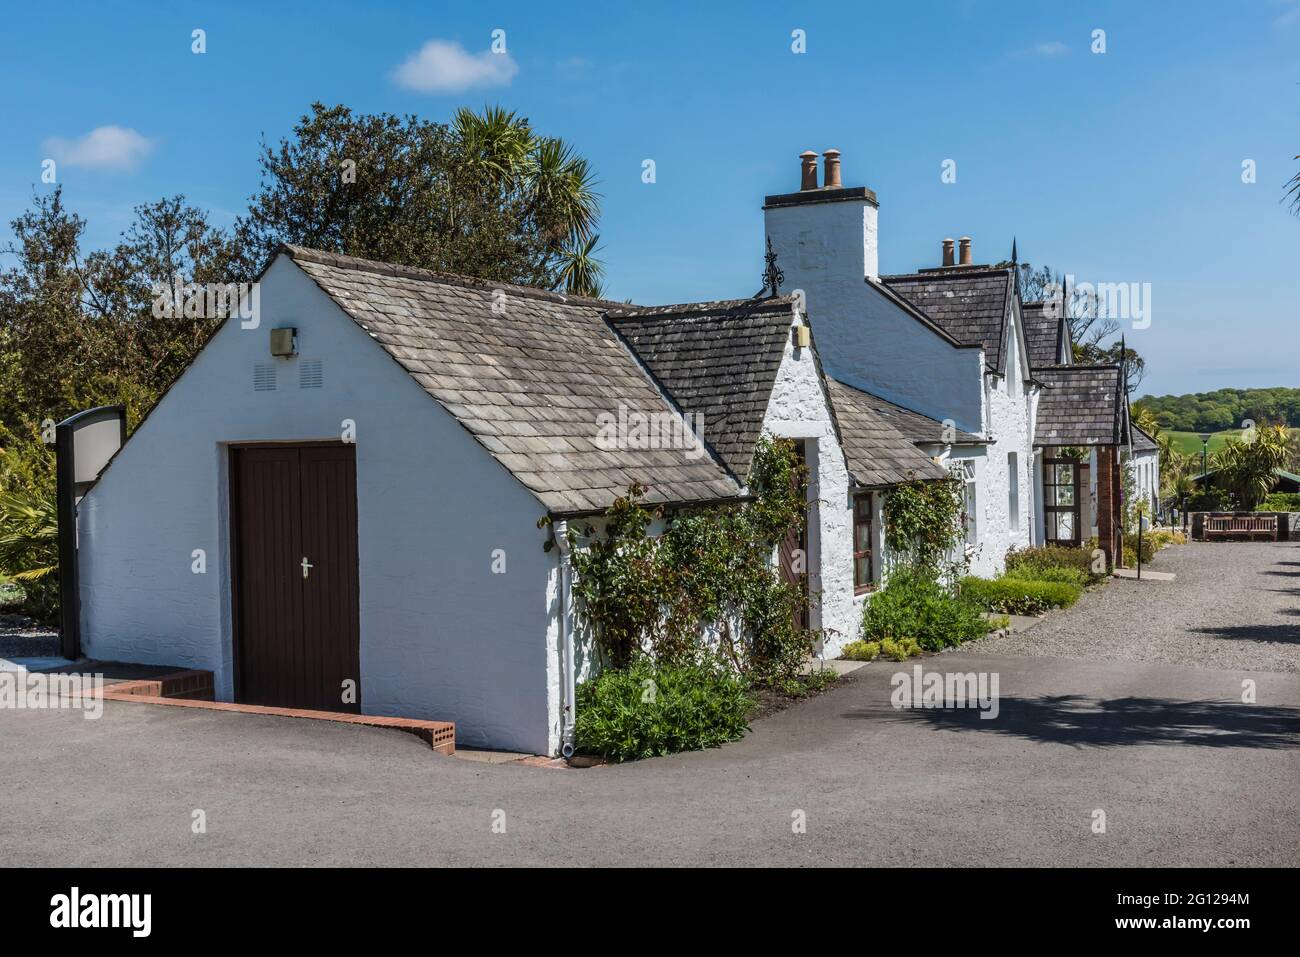 L'immagine è dei Cottages ai Giardini Botanici reali a Port Logan vicino Stranraer sulla penisola di Dumfries Galloway. Foto Stock